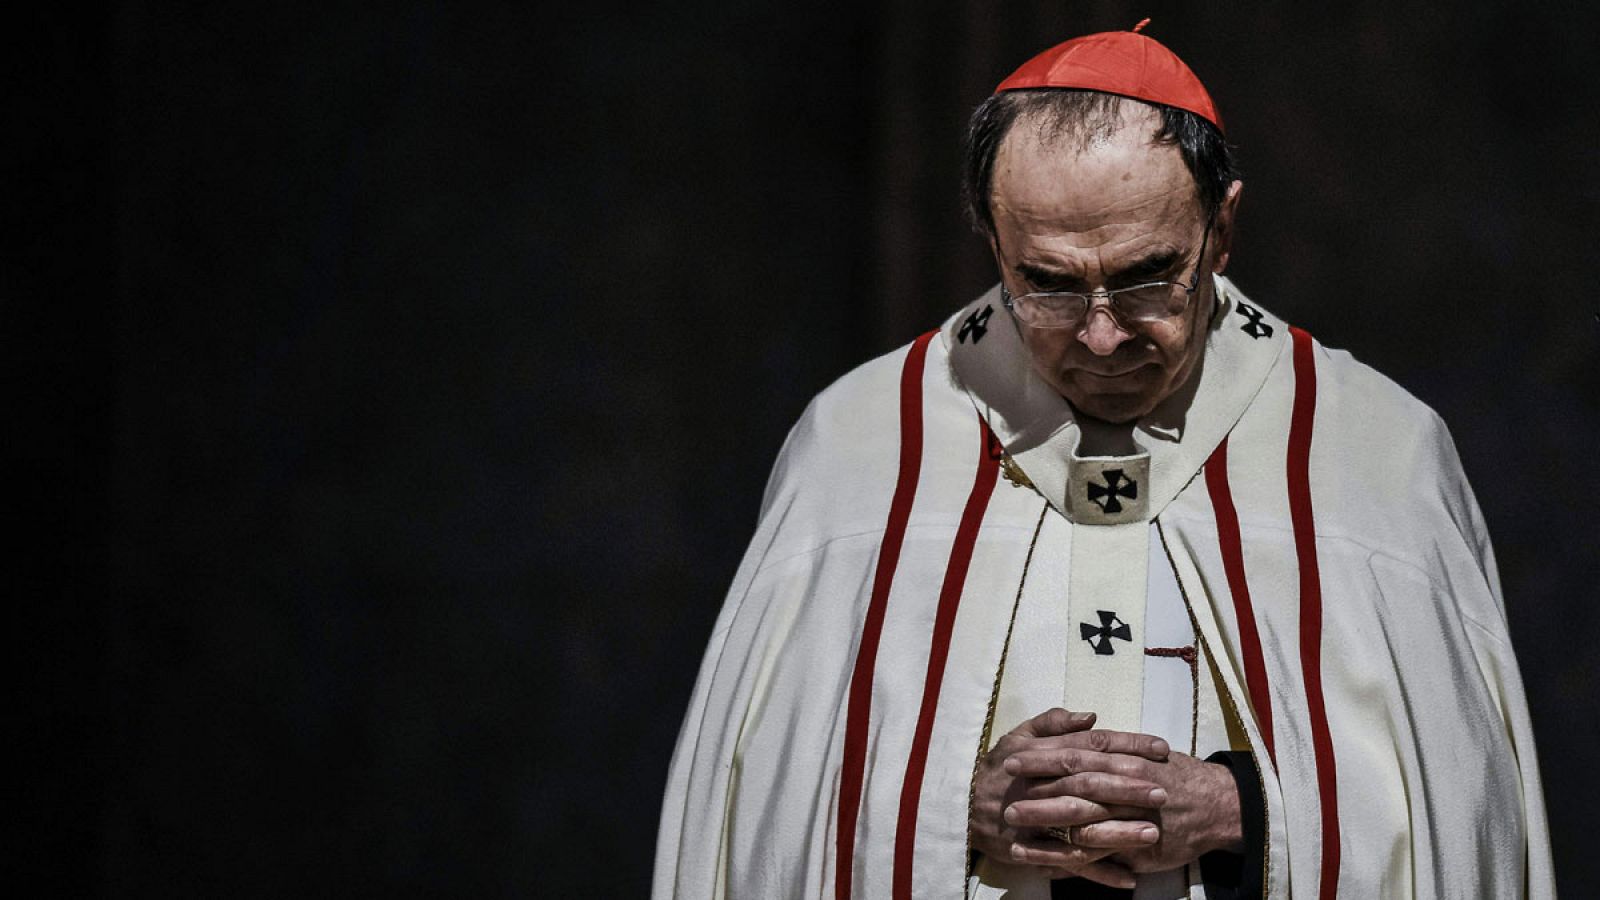 El cardenal Barbarin volverá a presentar su dimisión al Papa tras ser absuelto del delito de ocultar abusos